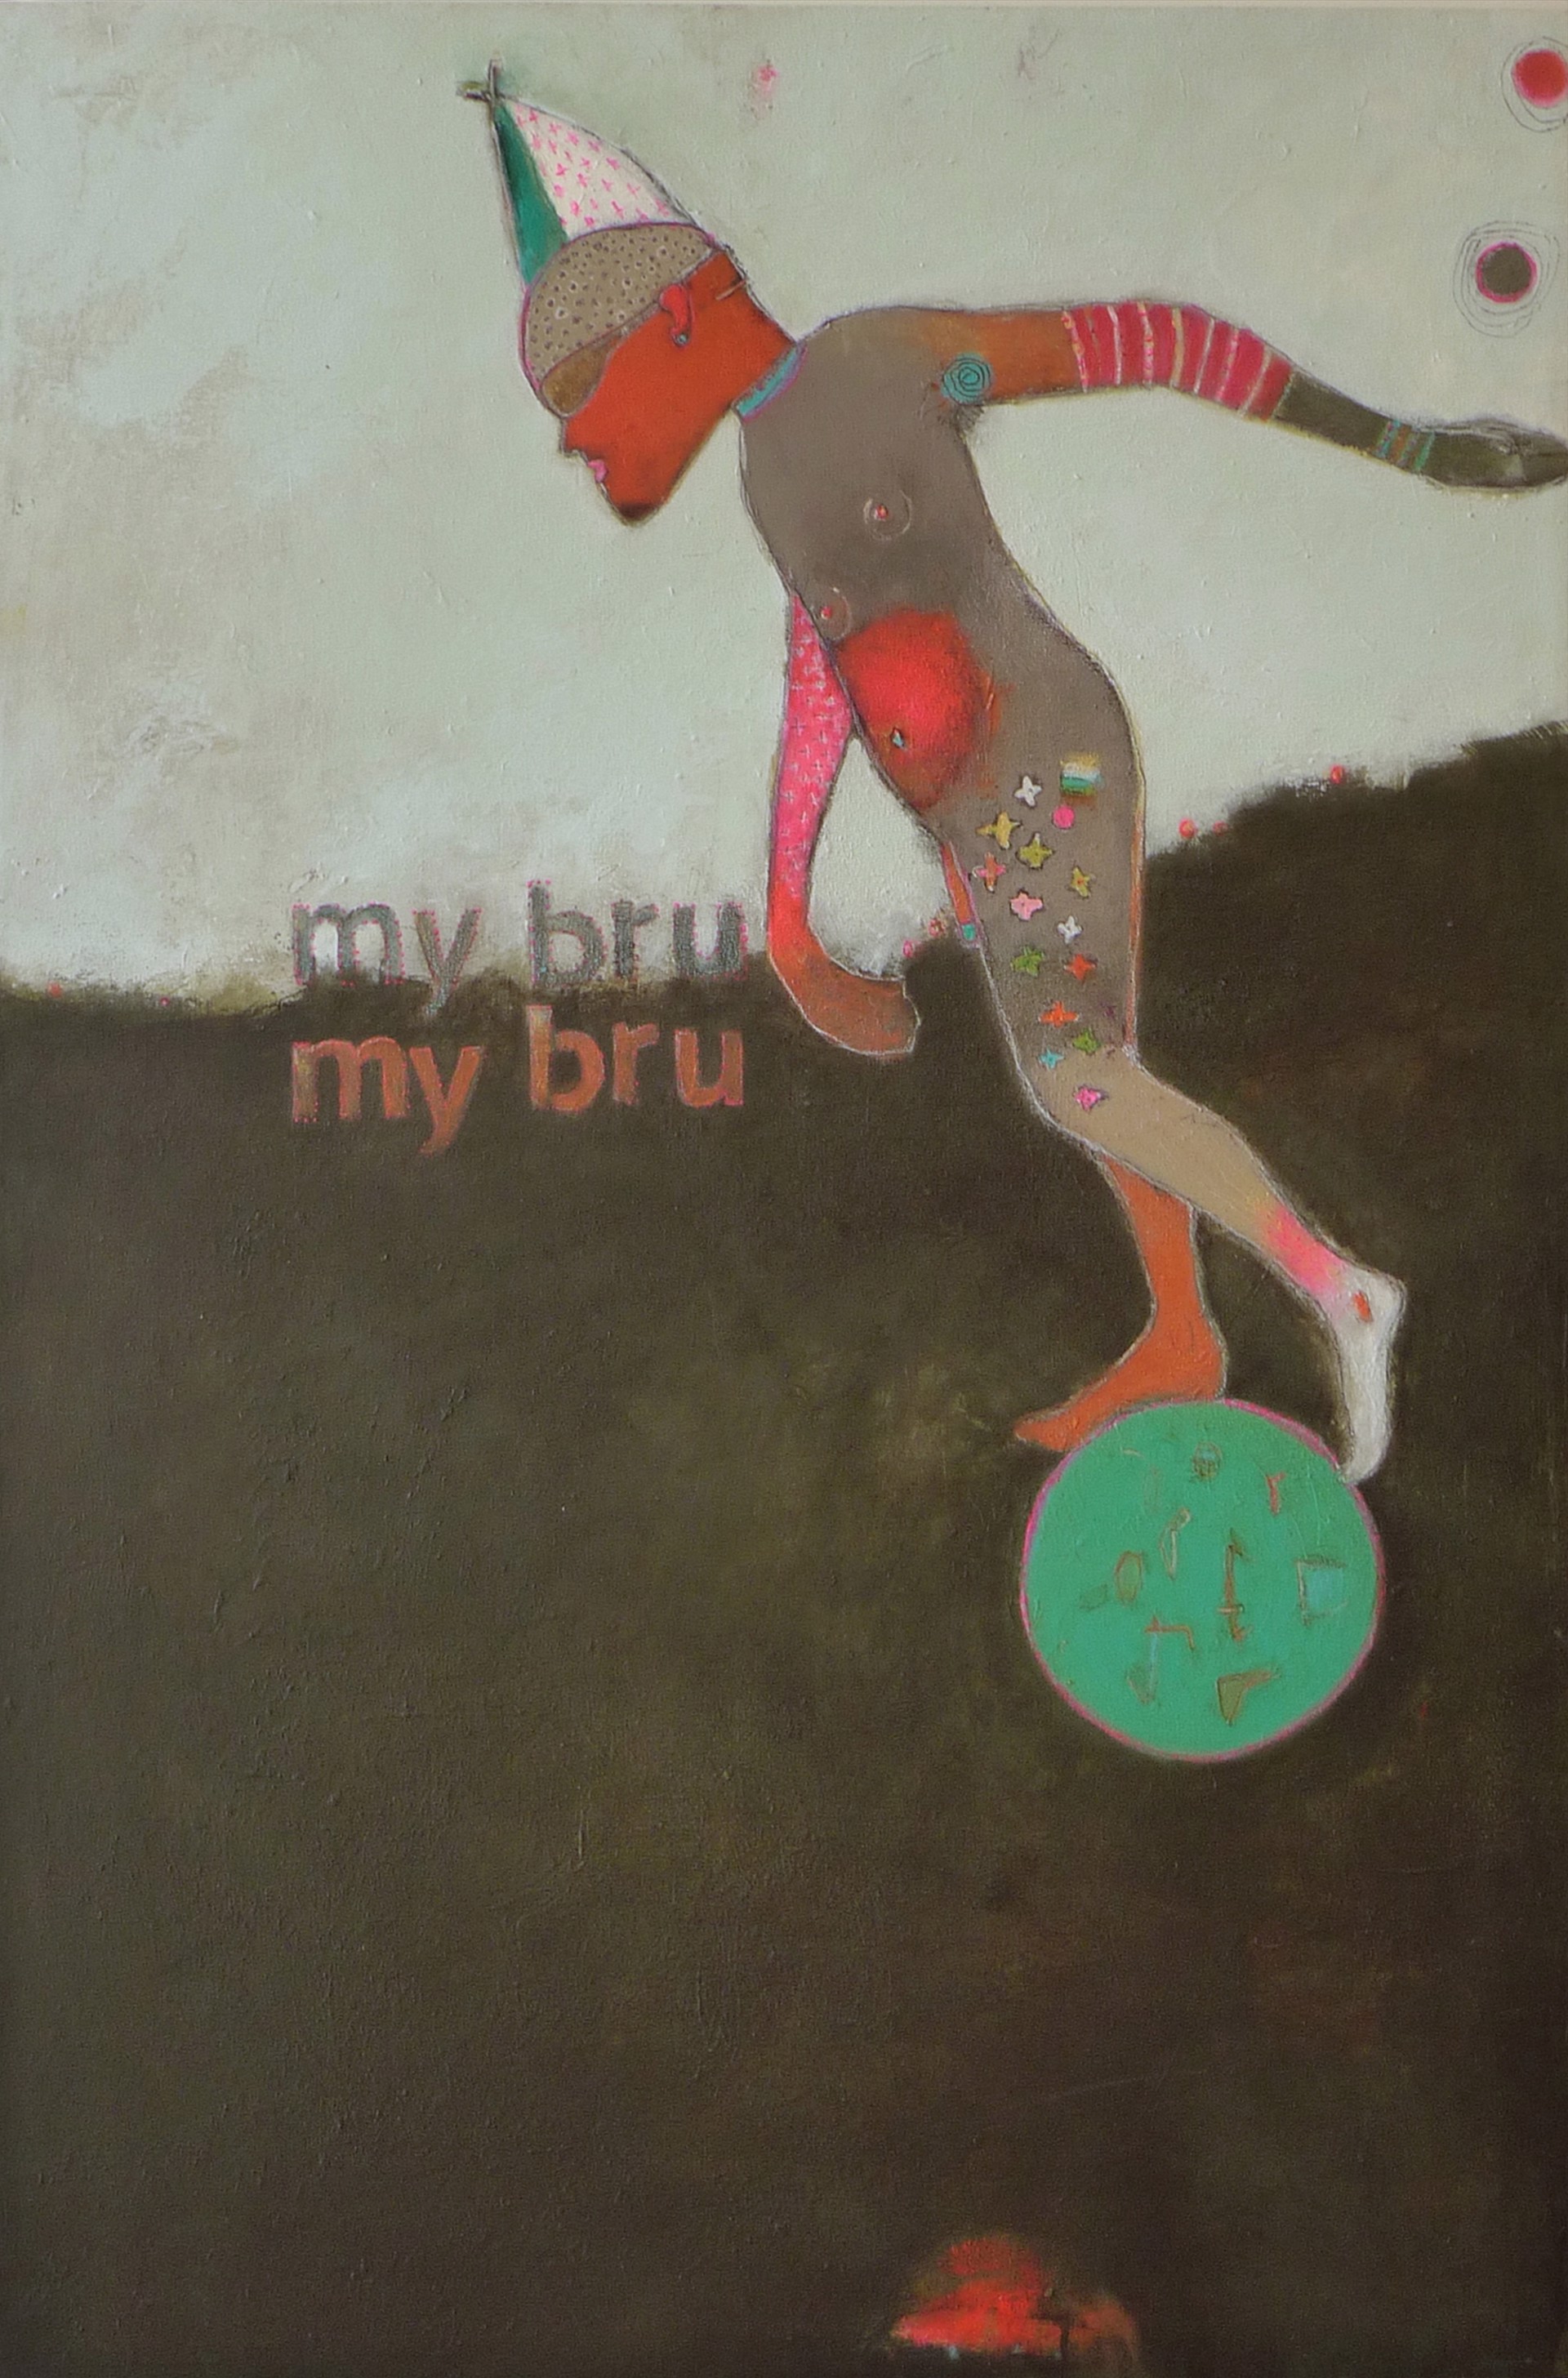 My Bru, My Bru by Lori Schappe-Youens